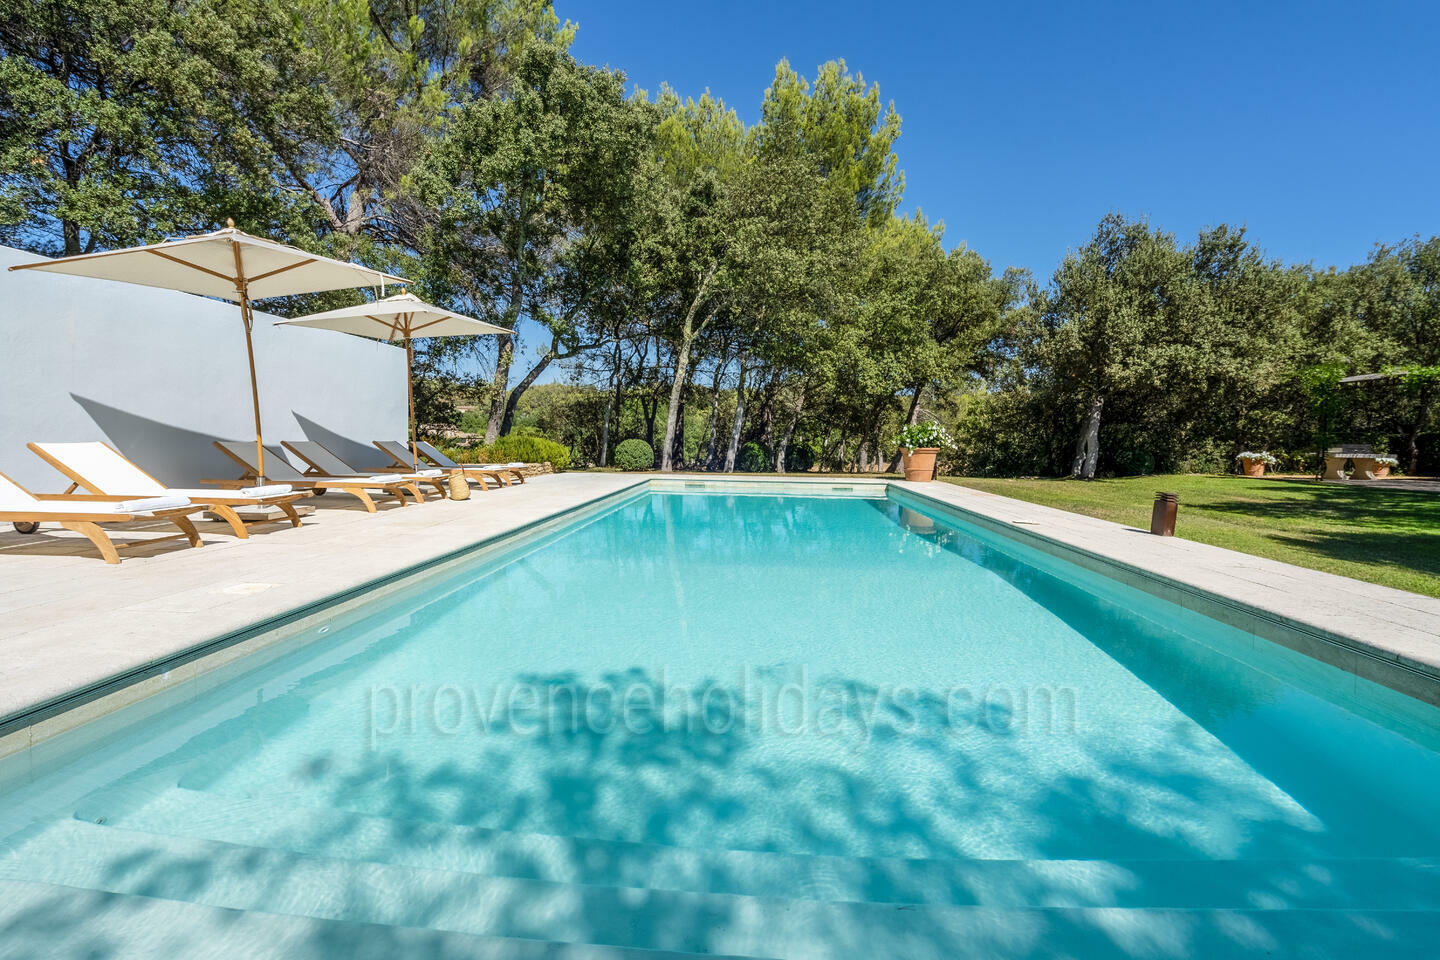 Location de vacances de charme avec piscine chauffée près d'Oppède 1 - Mas en Campagne: Villa: Pool